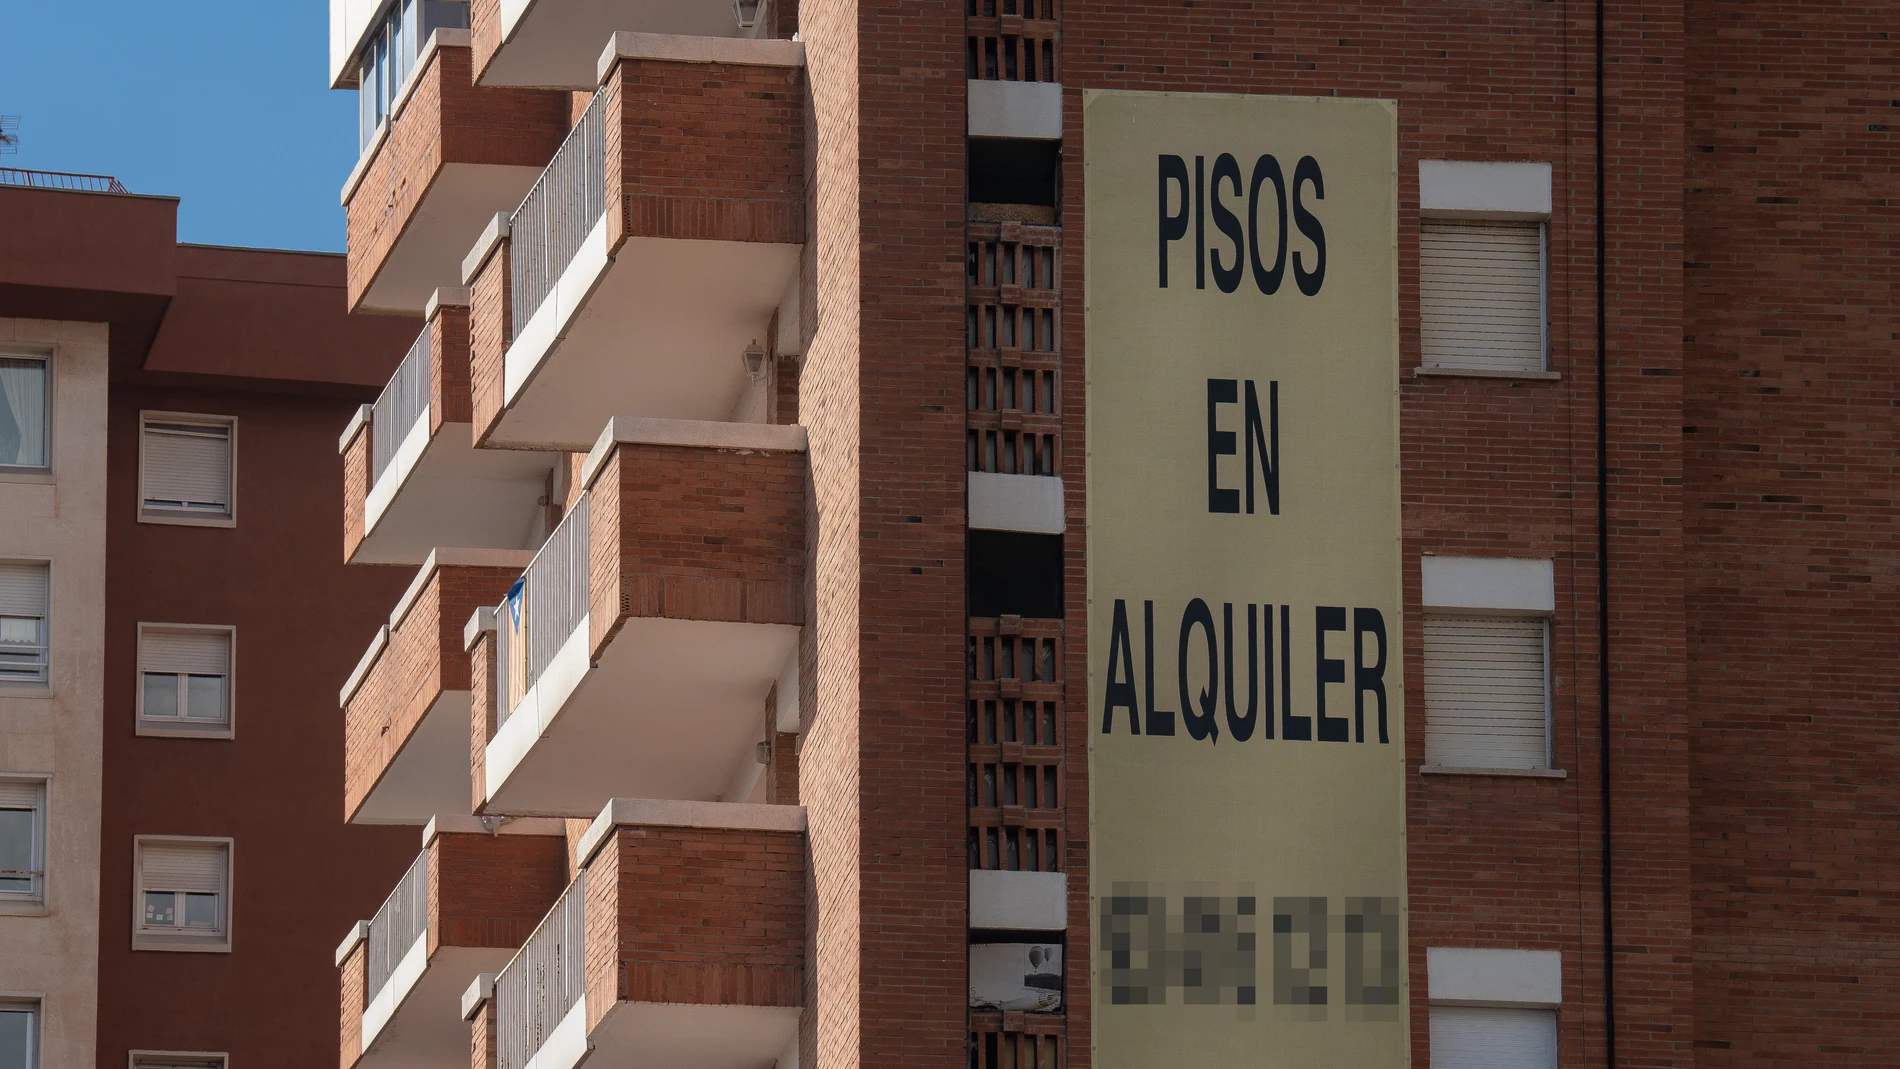 Cartel de alquiler de viviendas en la fachada de un edificio en Barcelona (archivo)